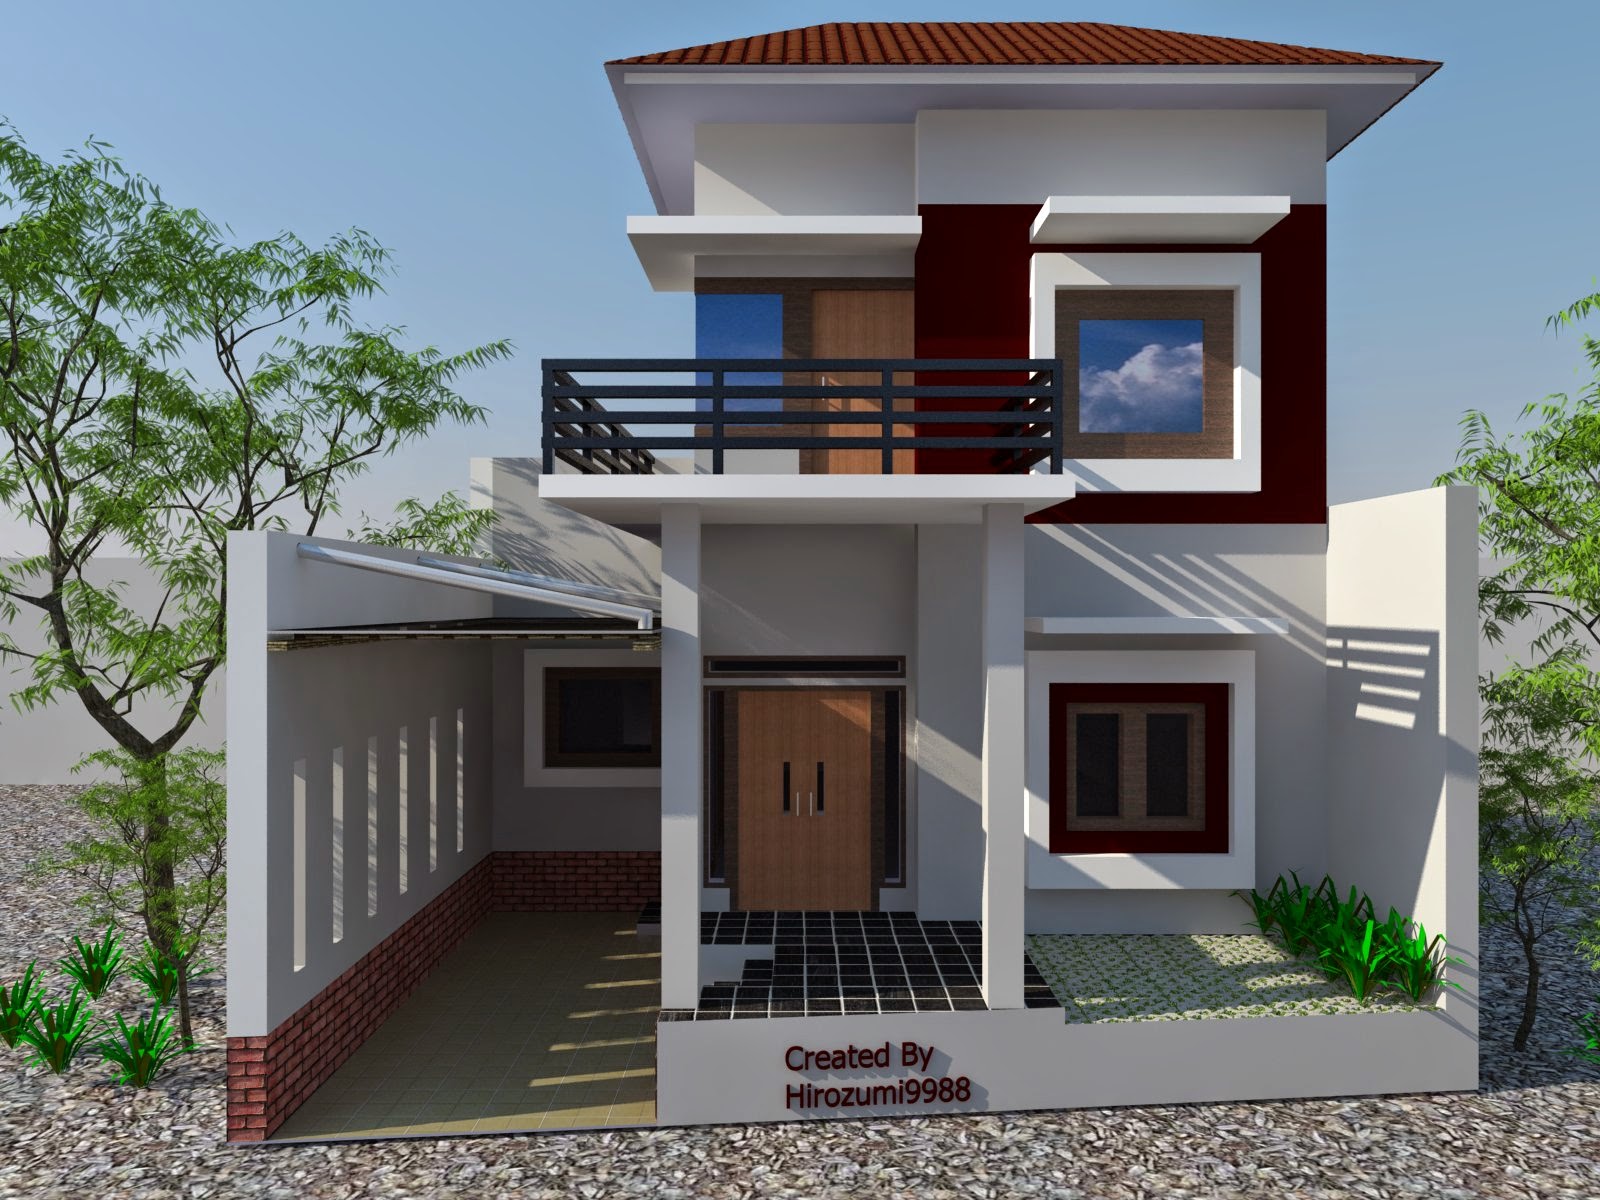 Harga Rumah Minimalis Sederhana 2 Lantai Terbaru Desain Rumah